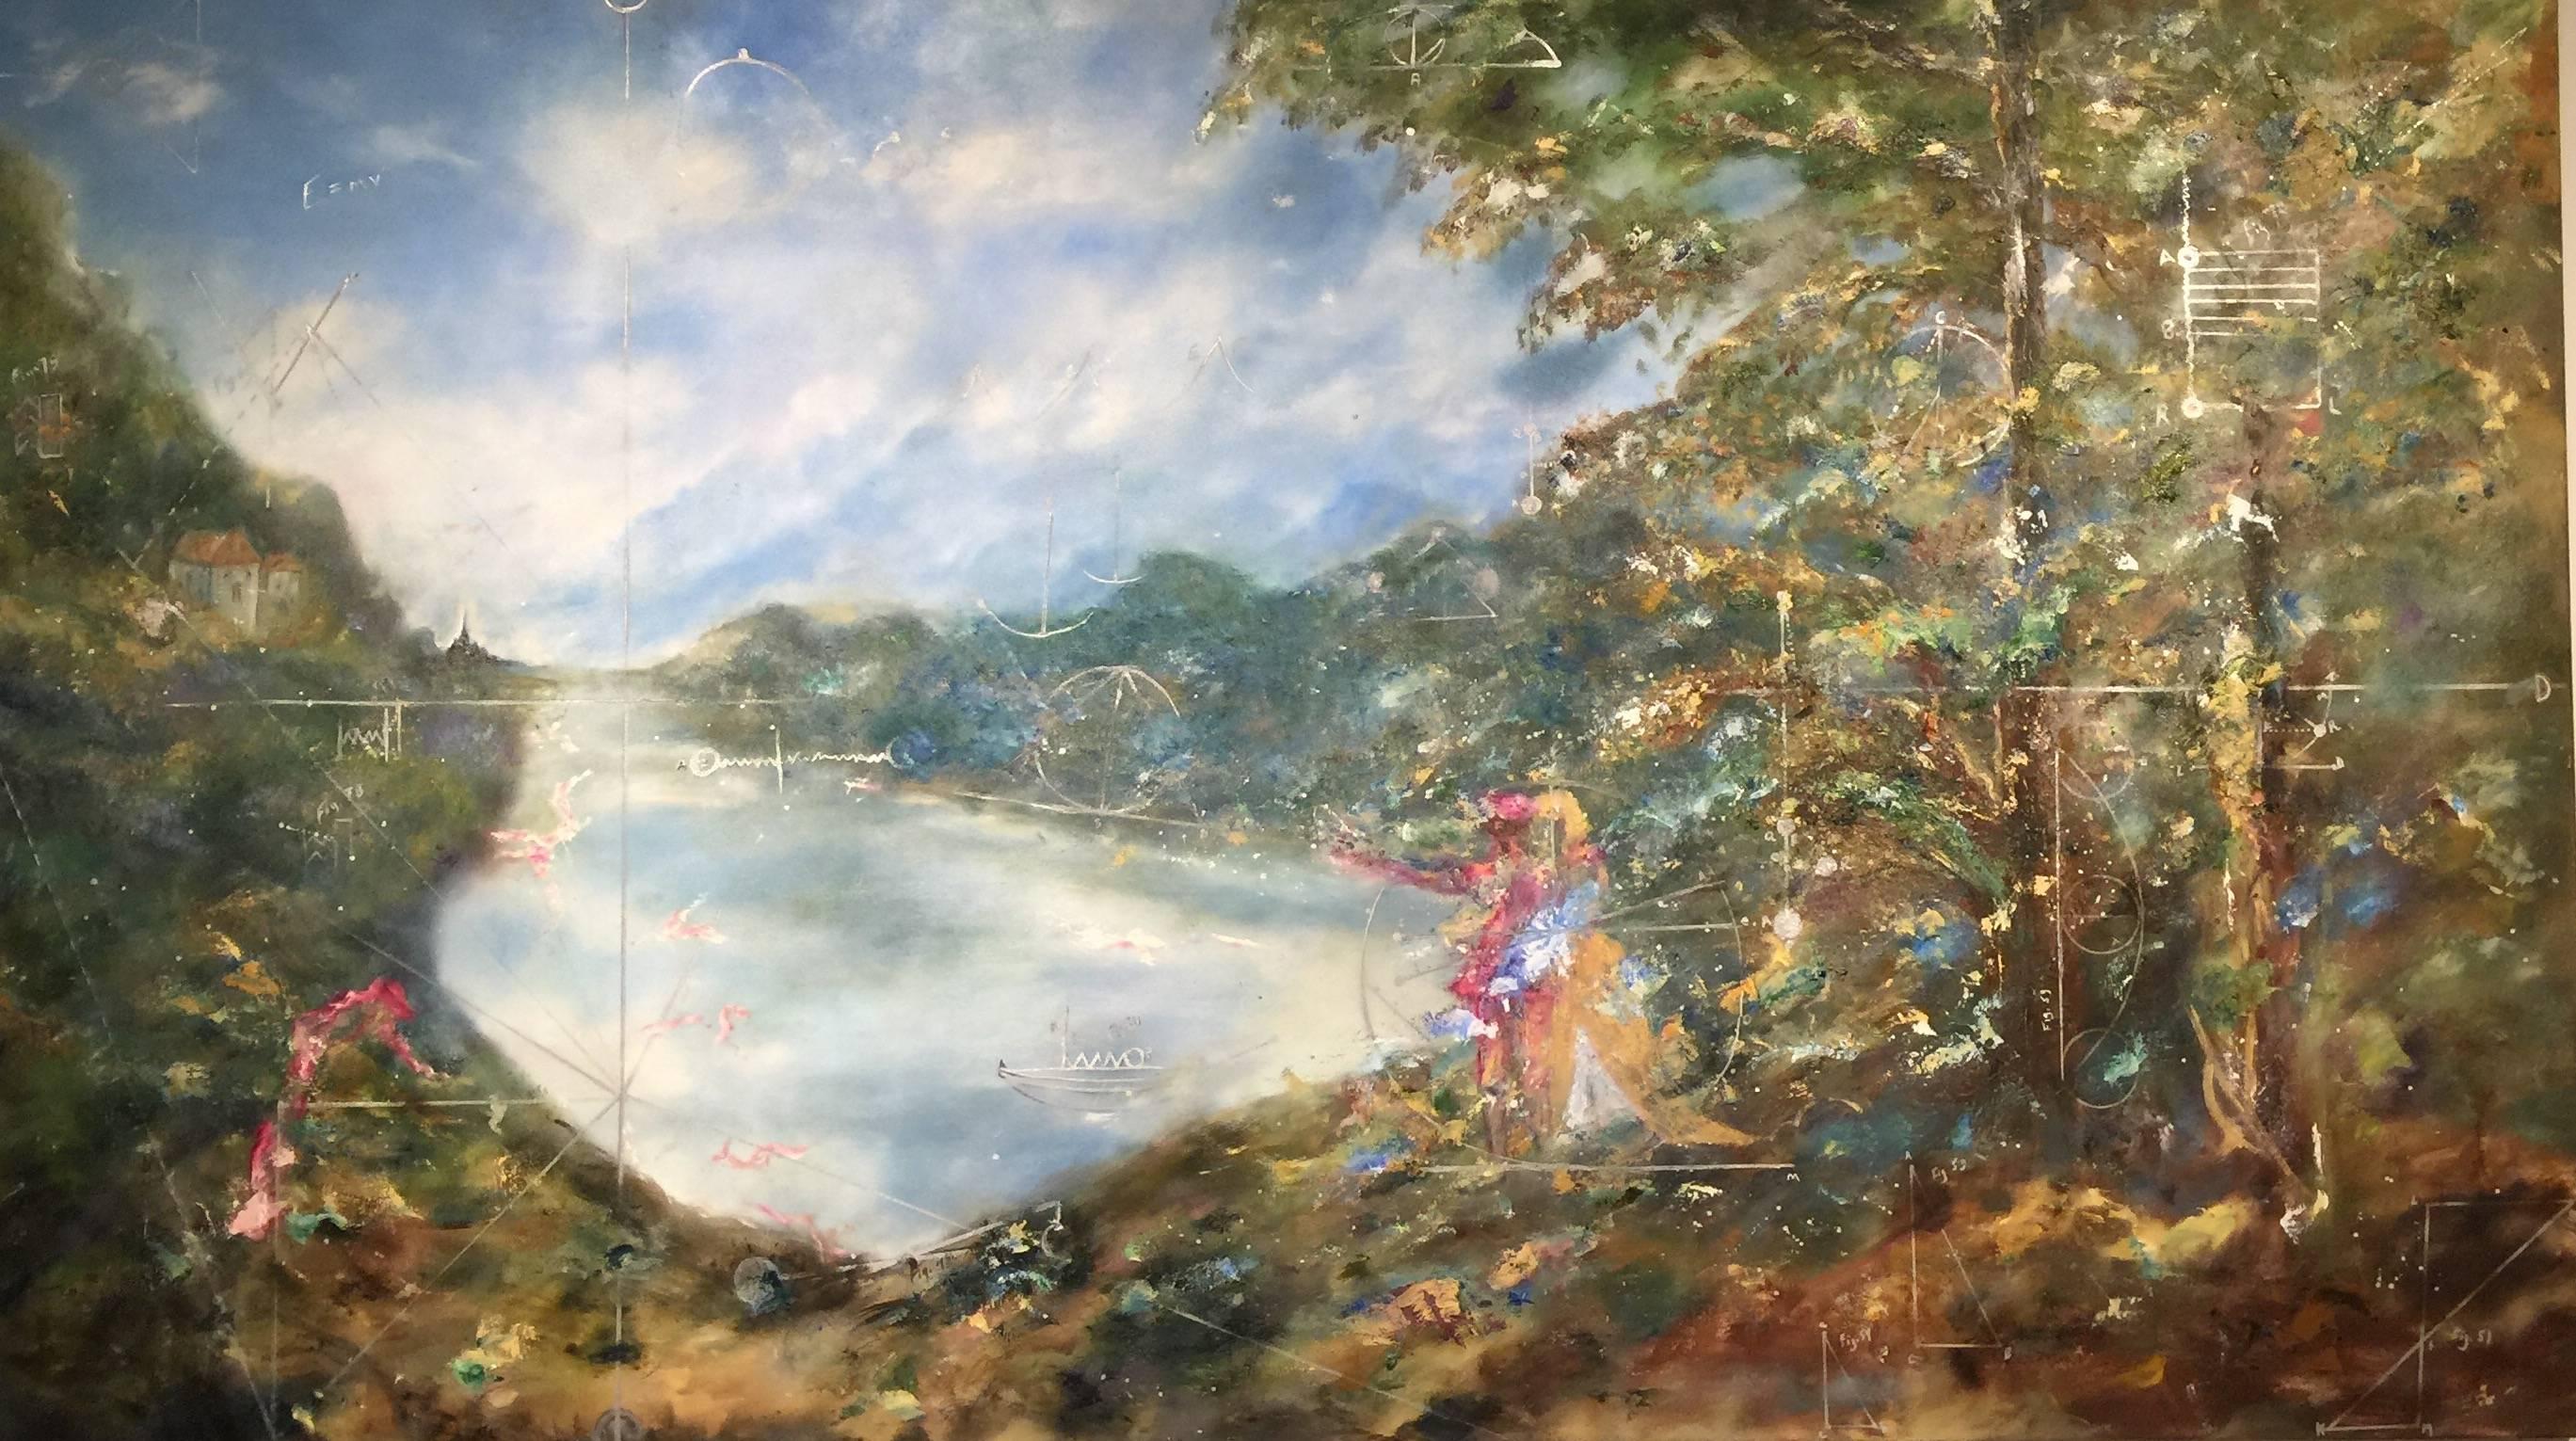 Arica Hilton Landscape Painting - Émilie du Châtelet - A stroll with Voltaire